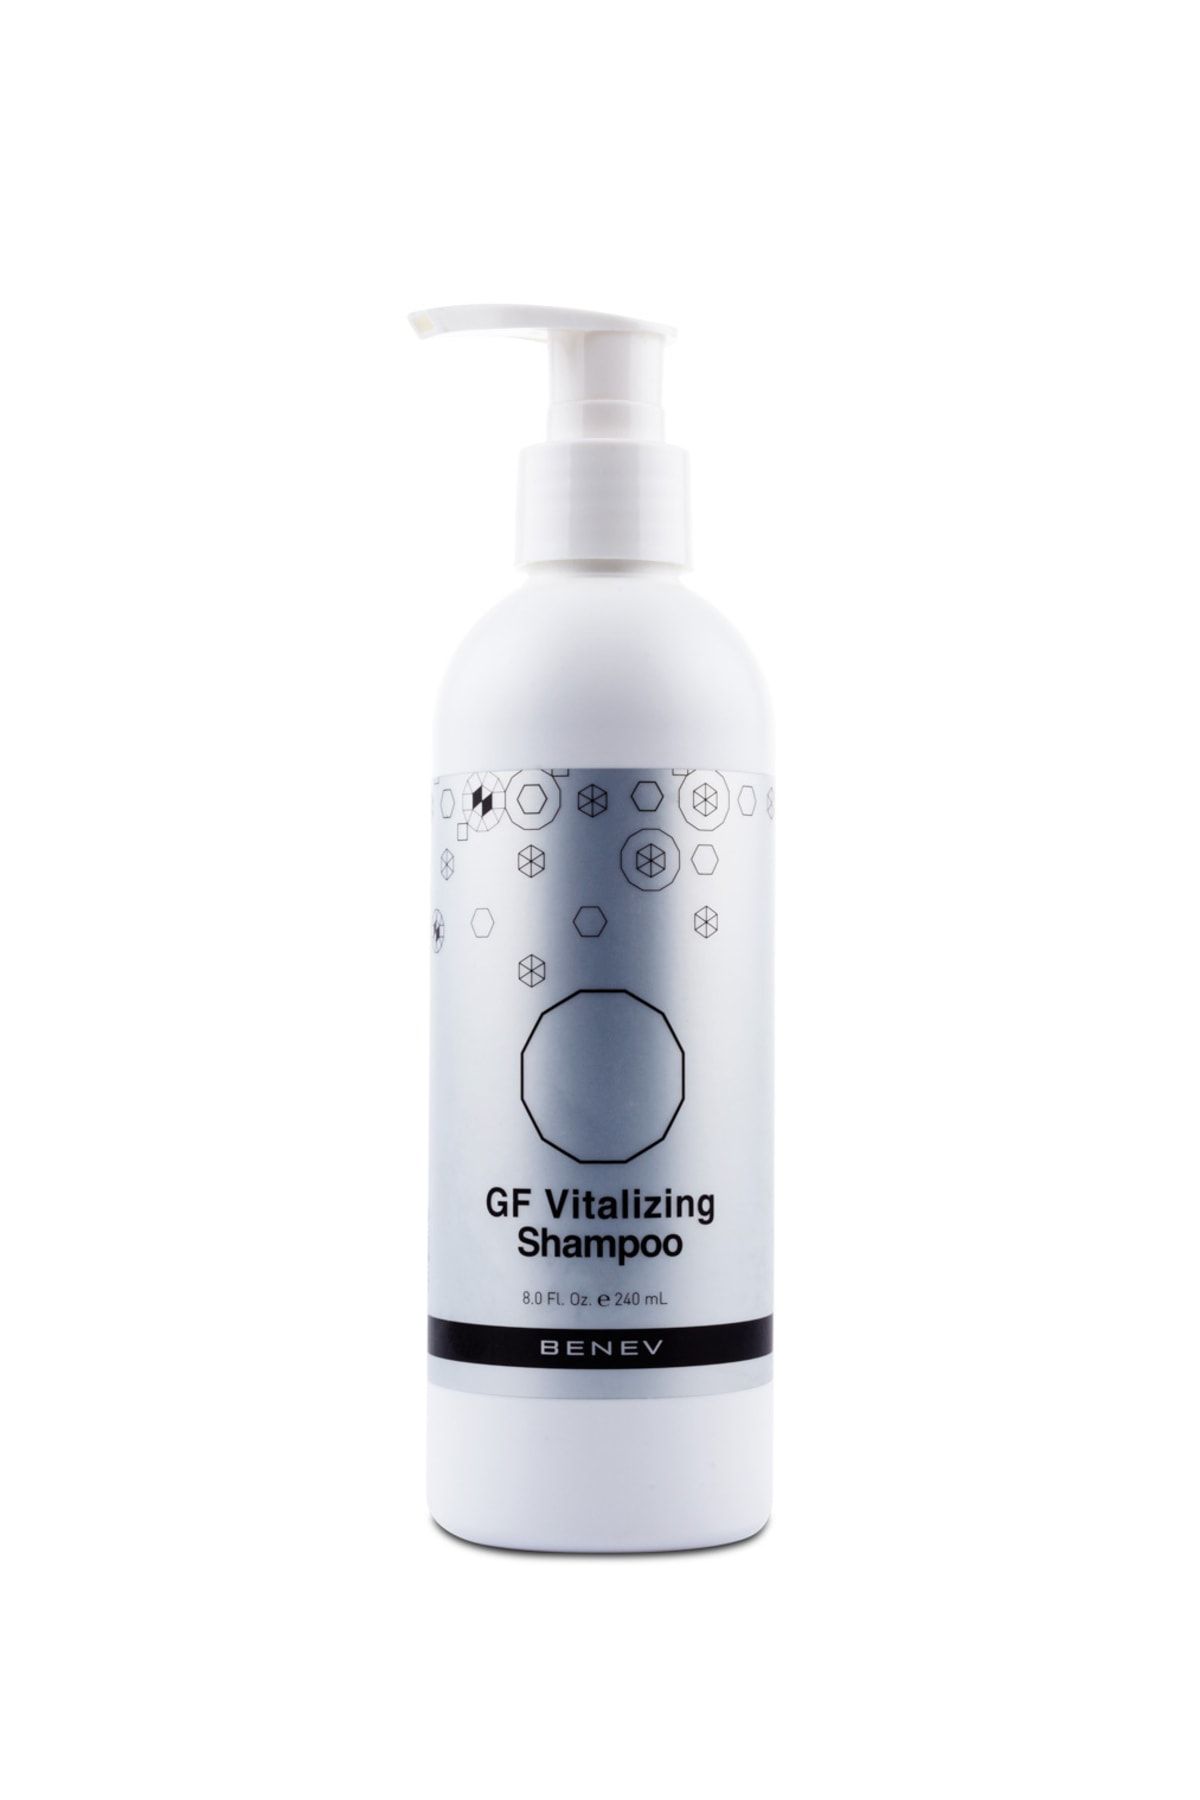 Benev Gf Vitalizing Shampoo 240ml Saç Dökülmesine Karşı Yıpranmış Ve Hasar Görmüş Saçlara Bitkisel Koruma